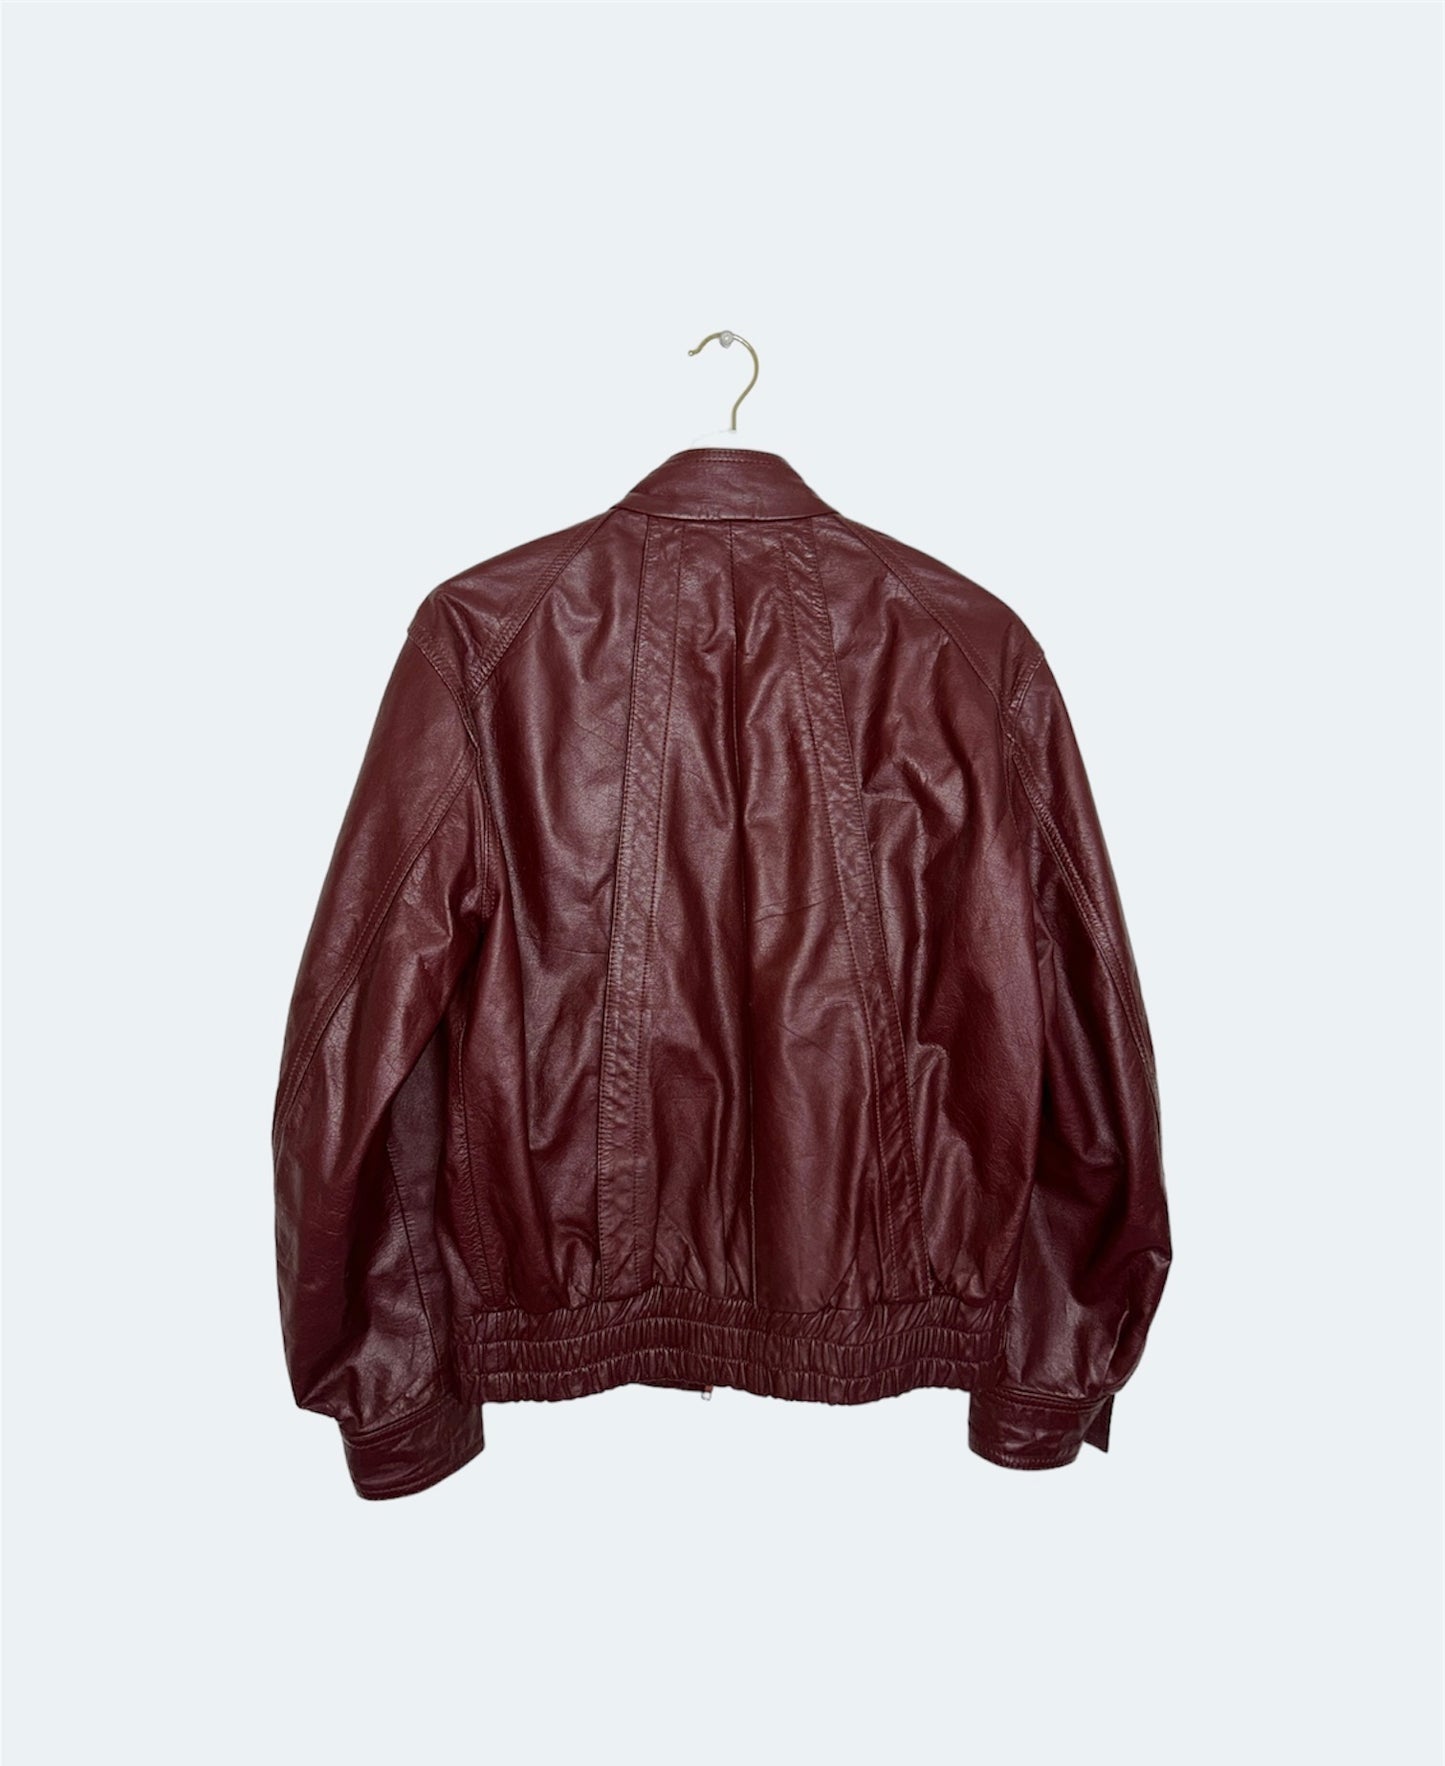 back of burgundy vintage leather jacket